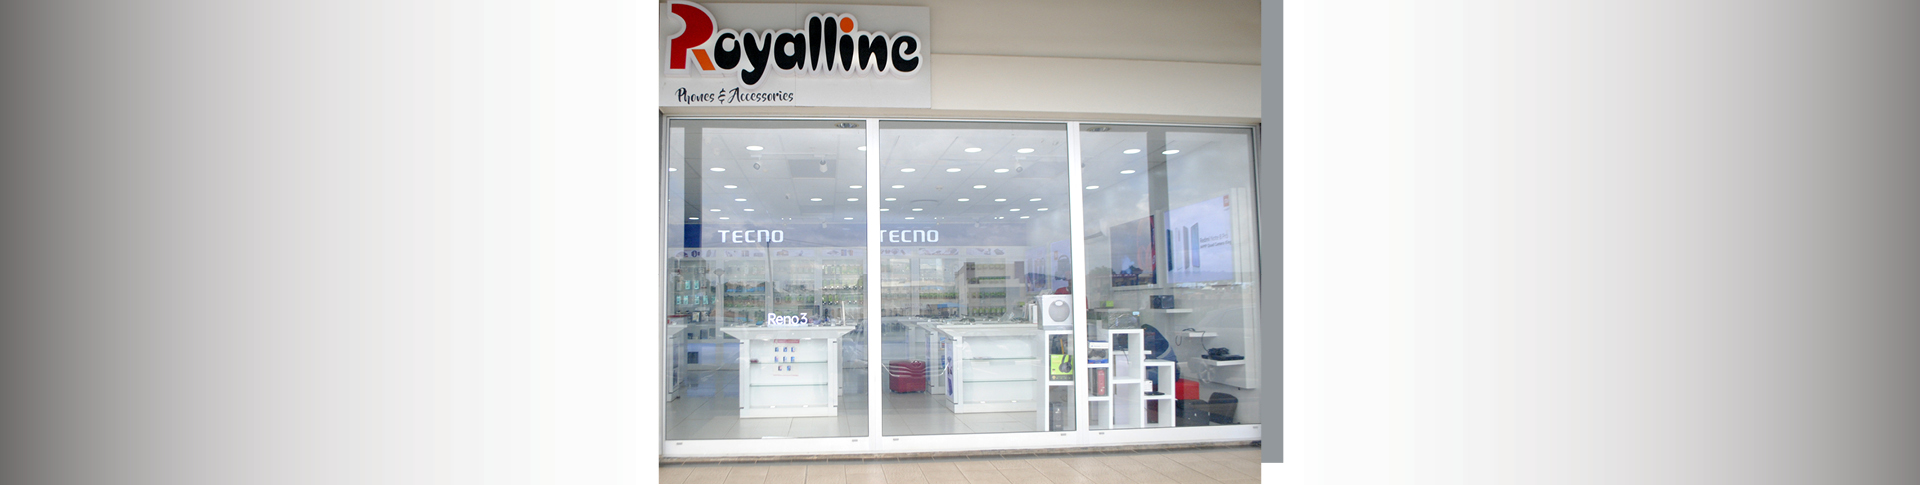 Royalline Technologies shop front